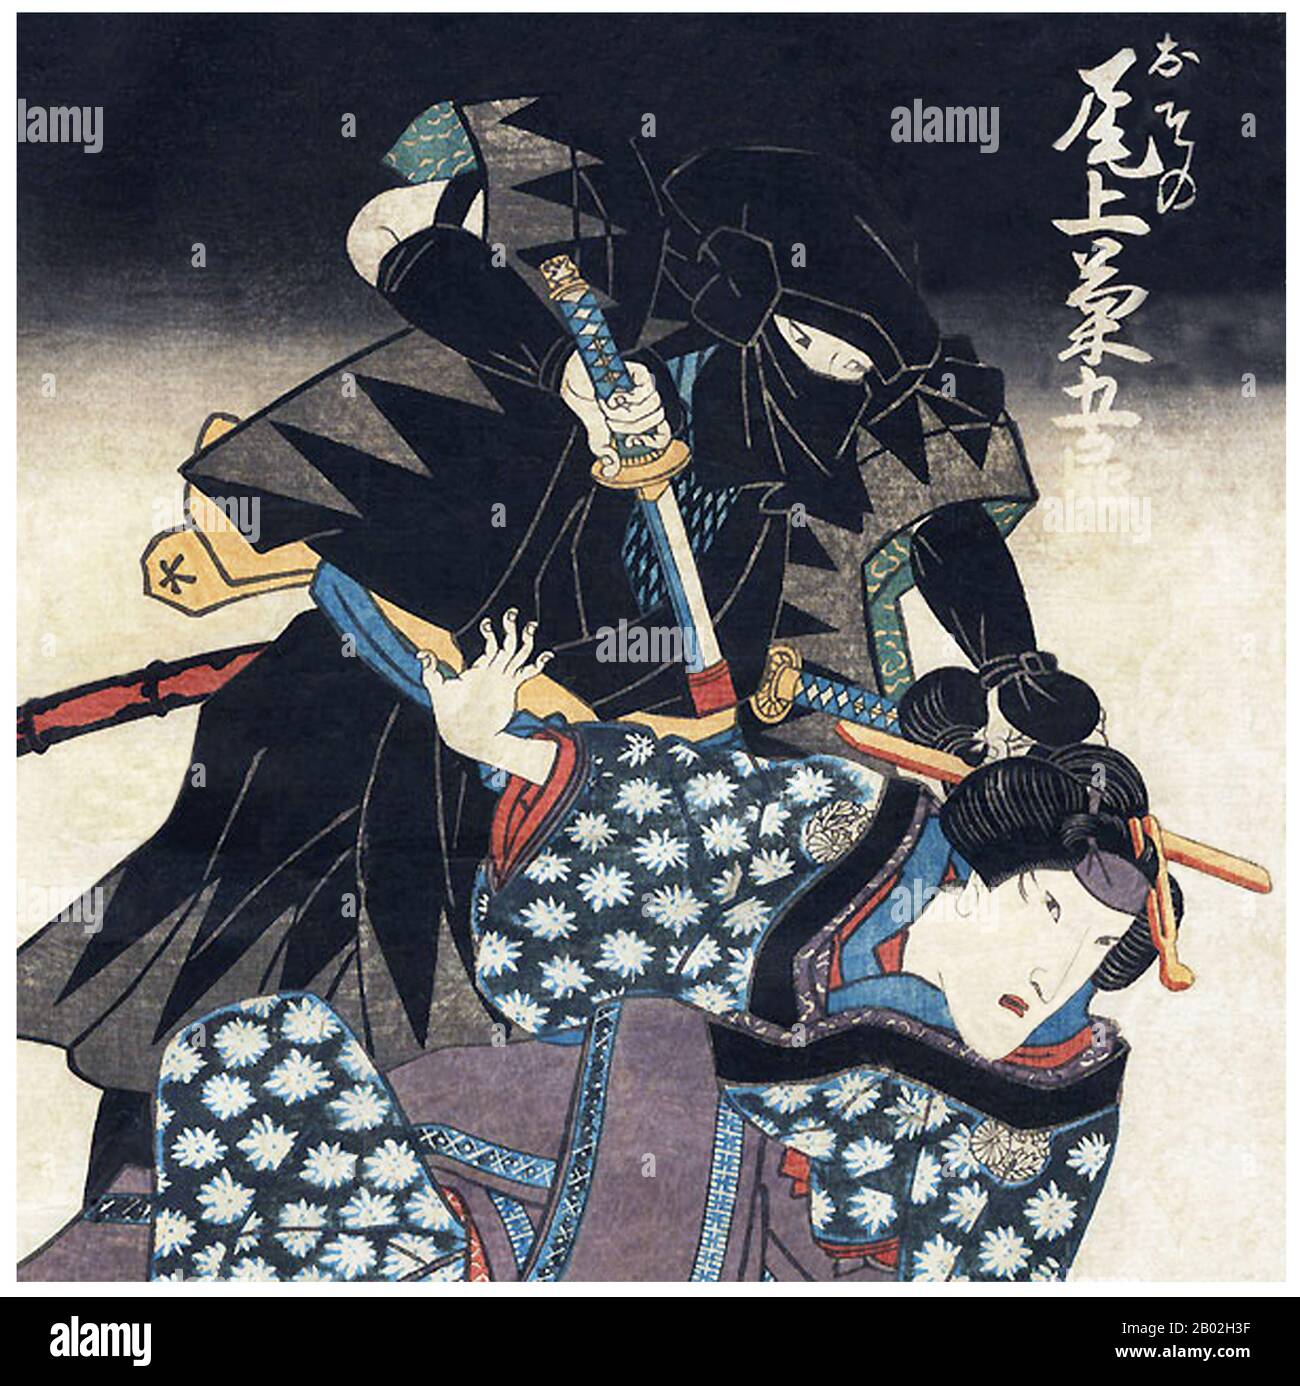 Ein Ninja (忍者) oder Shinobi (忍び) war ein verdeckter Agent oder Söldner im feudalen Japan, der sich auf unorthodoxe Kriegsführung spezialisierte. Zu den Funktionen des Ninja gehörten Spionage, Sabotage, Infiltration und Ermordung sowie offener Kampf in bestimmten Situationen. Ihre verdeckten Kriegsmethoden kontrastierten die Ninja mit den Samurai, die strenge Regeln über Ehre und Kampf eingehalten hatten. Die Shinobi Proper, eine speziell ausgebildete Gruppe von Spionen und Söldnern, erschienen in der Sengoku- oder "kriegführenden Staaten"-Zeit, im 15. Jahrhundert, aber es kann Antegedemente im 14. Jahrhundert und möglicherweise sogar im 12. Jahrhundert gegeben haben Stockfoto